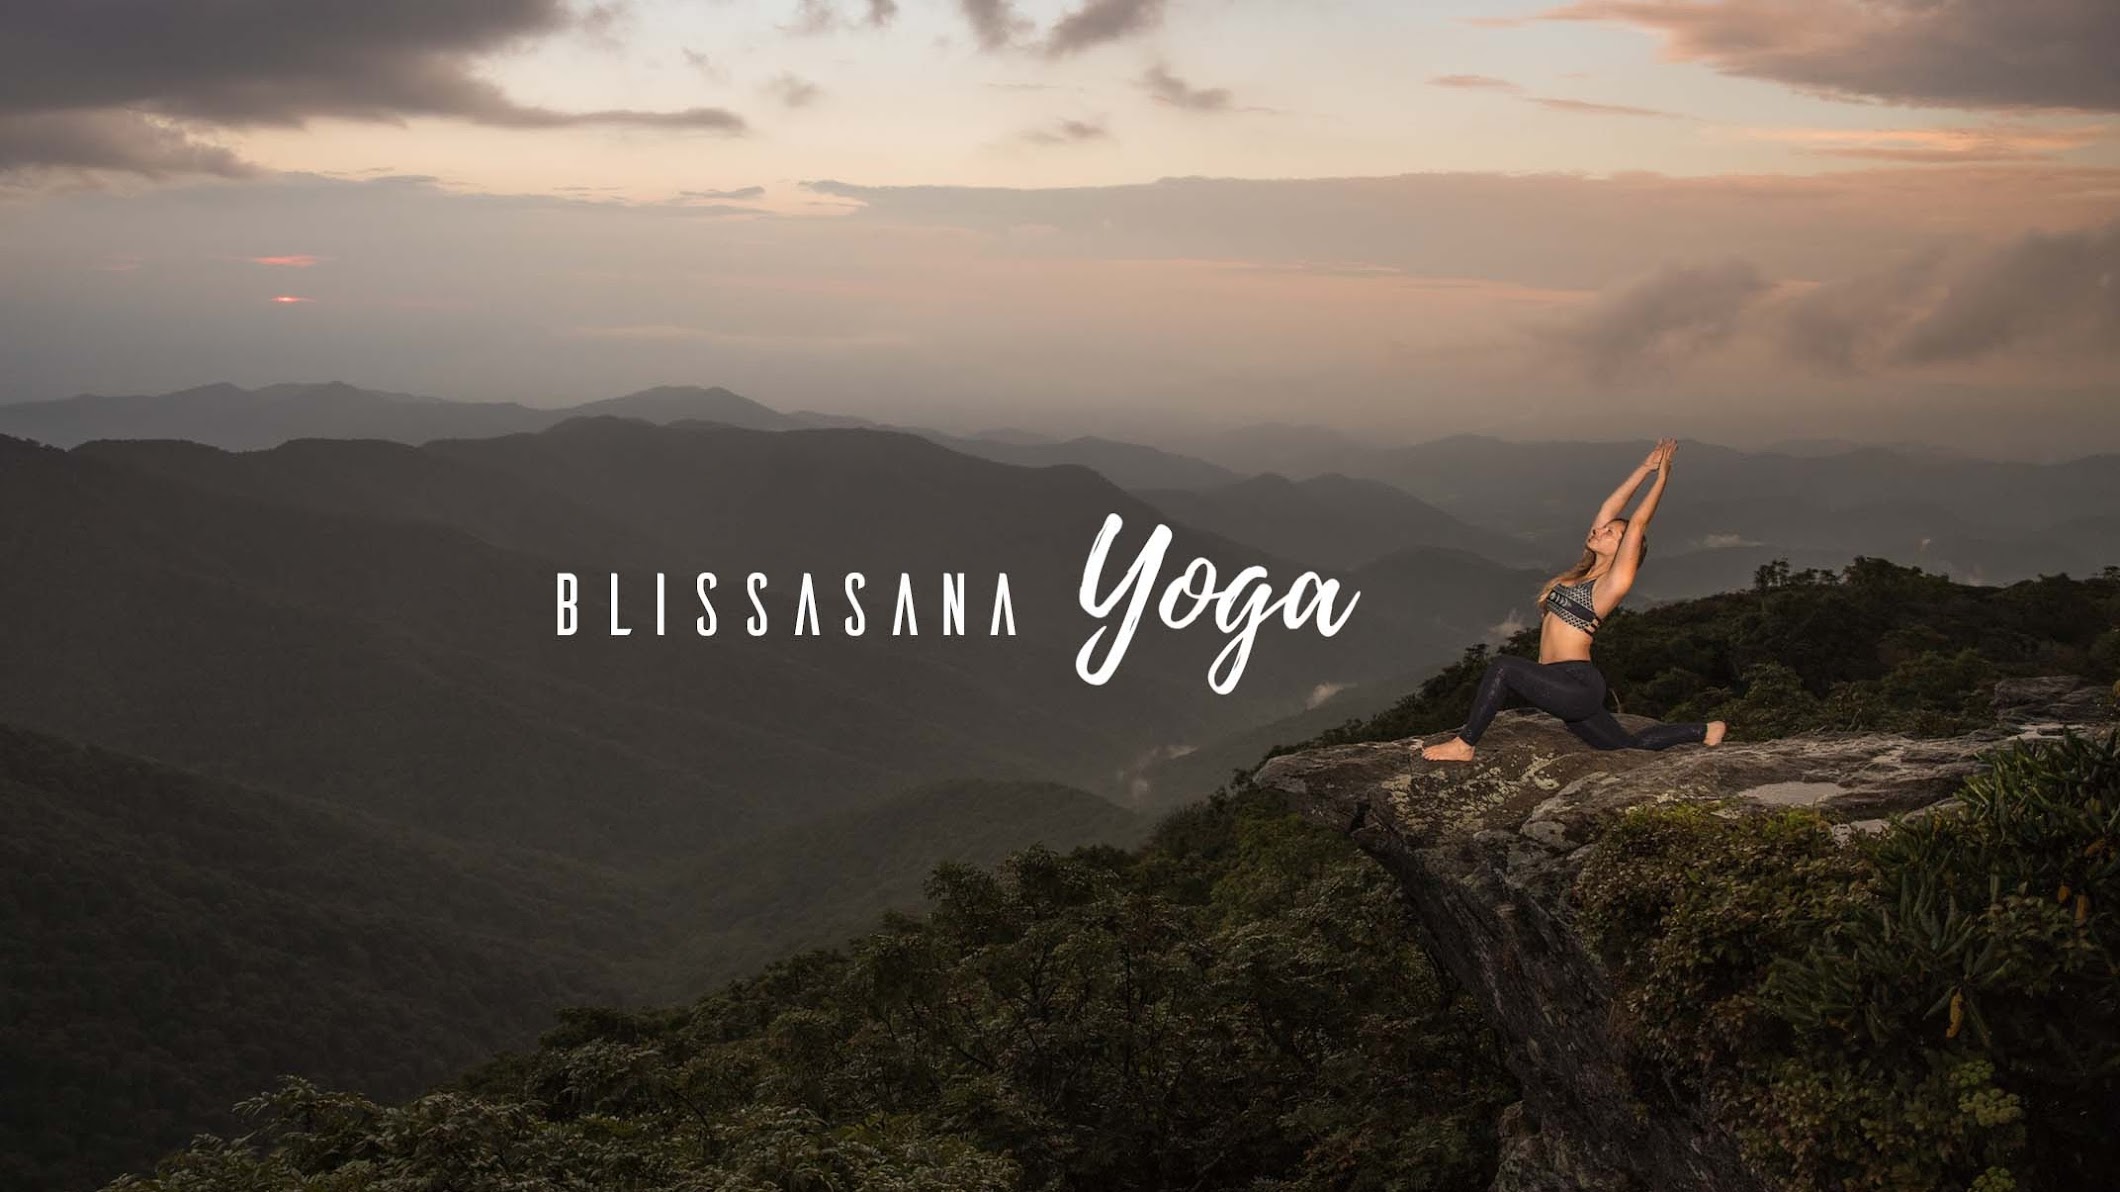 Blissasana Yoga